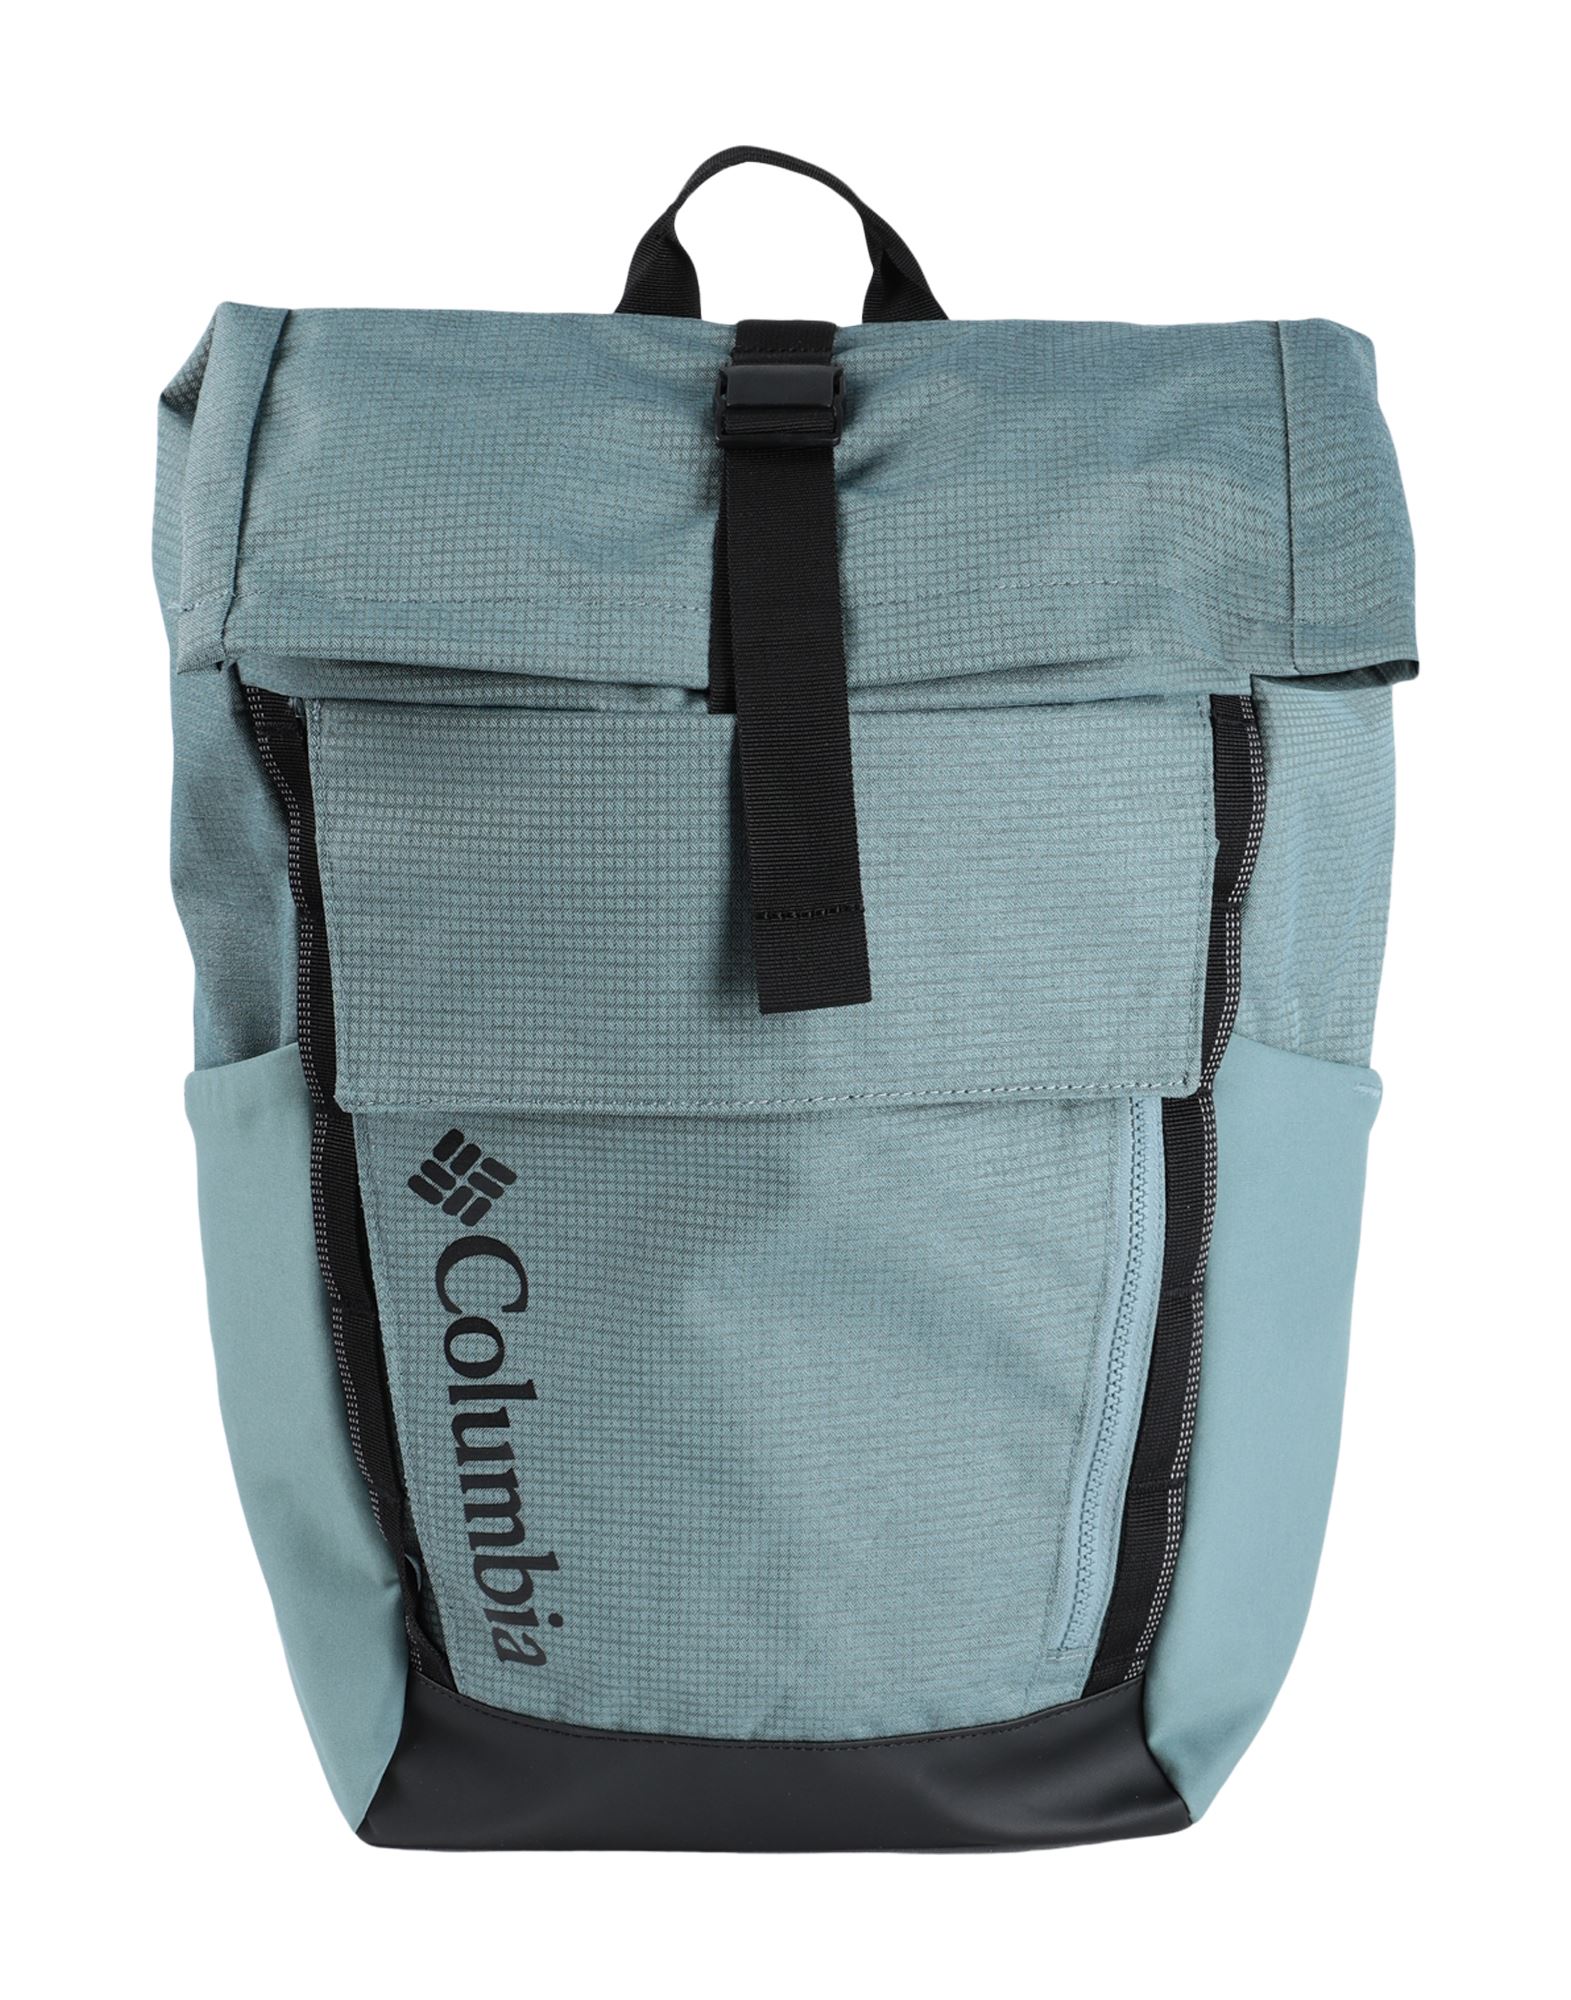 COLUMBIA Backpacks for Women | ModeSens